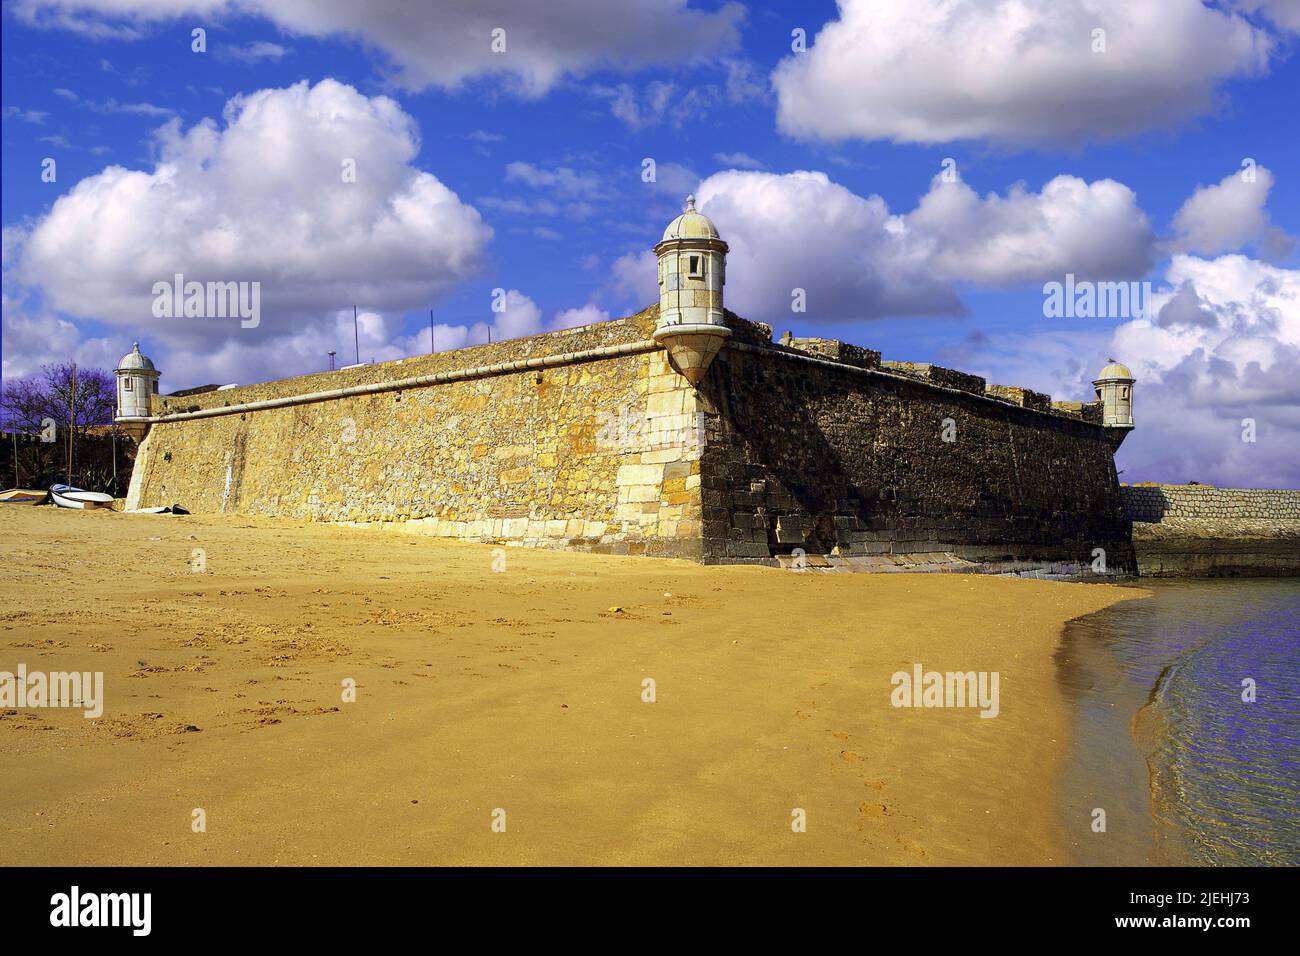 Arena dorada en la playa de Lagos, con las antiguas defensas del puerto, el siglo 17th Forte Bandeira, bajo un cielo azul profundo, Algarve, Portugal Foto de stock